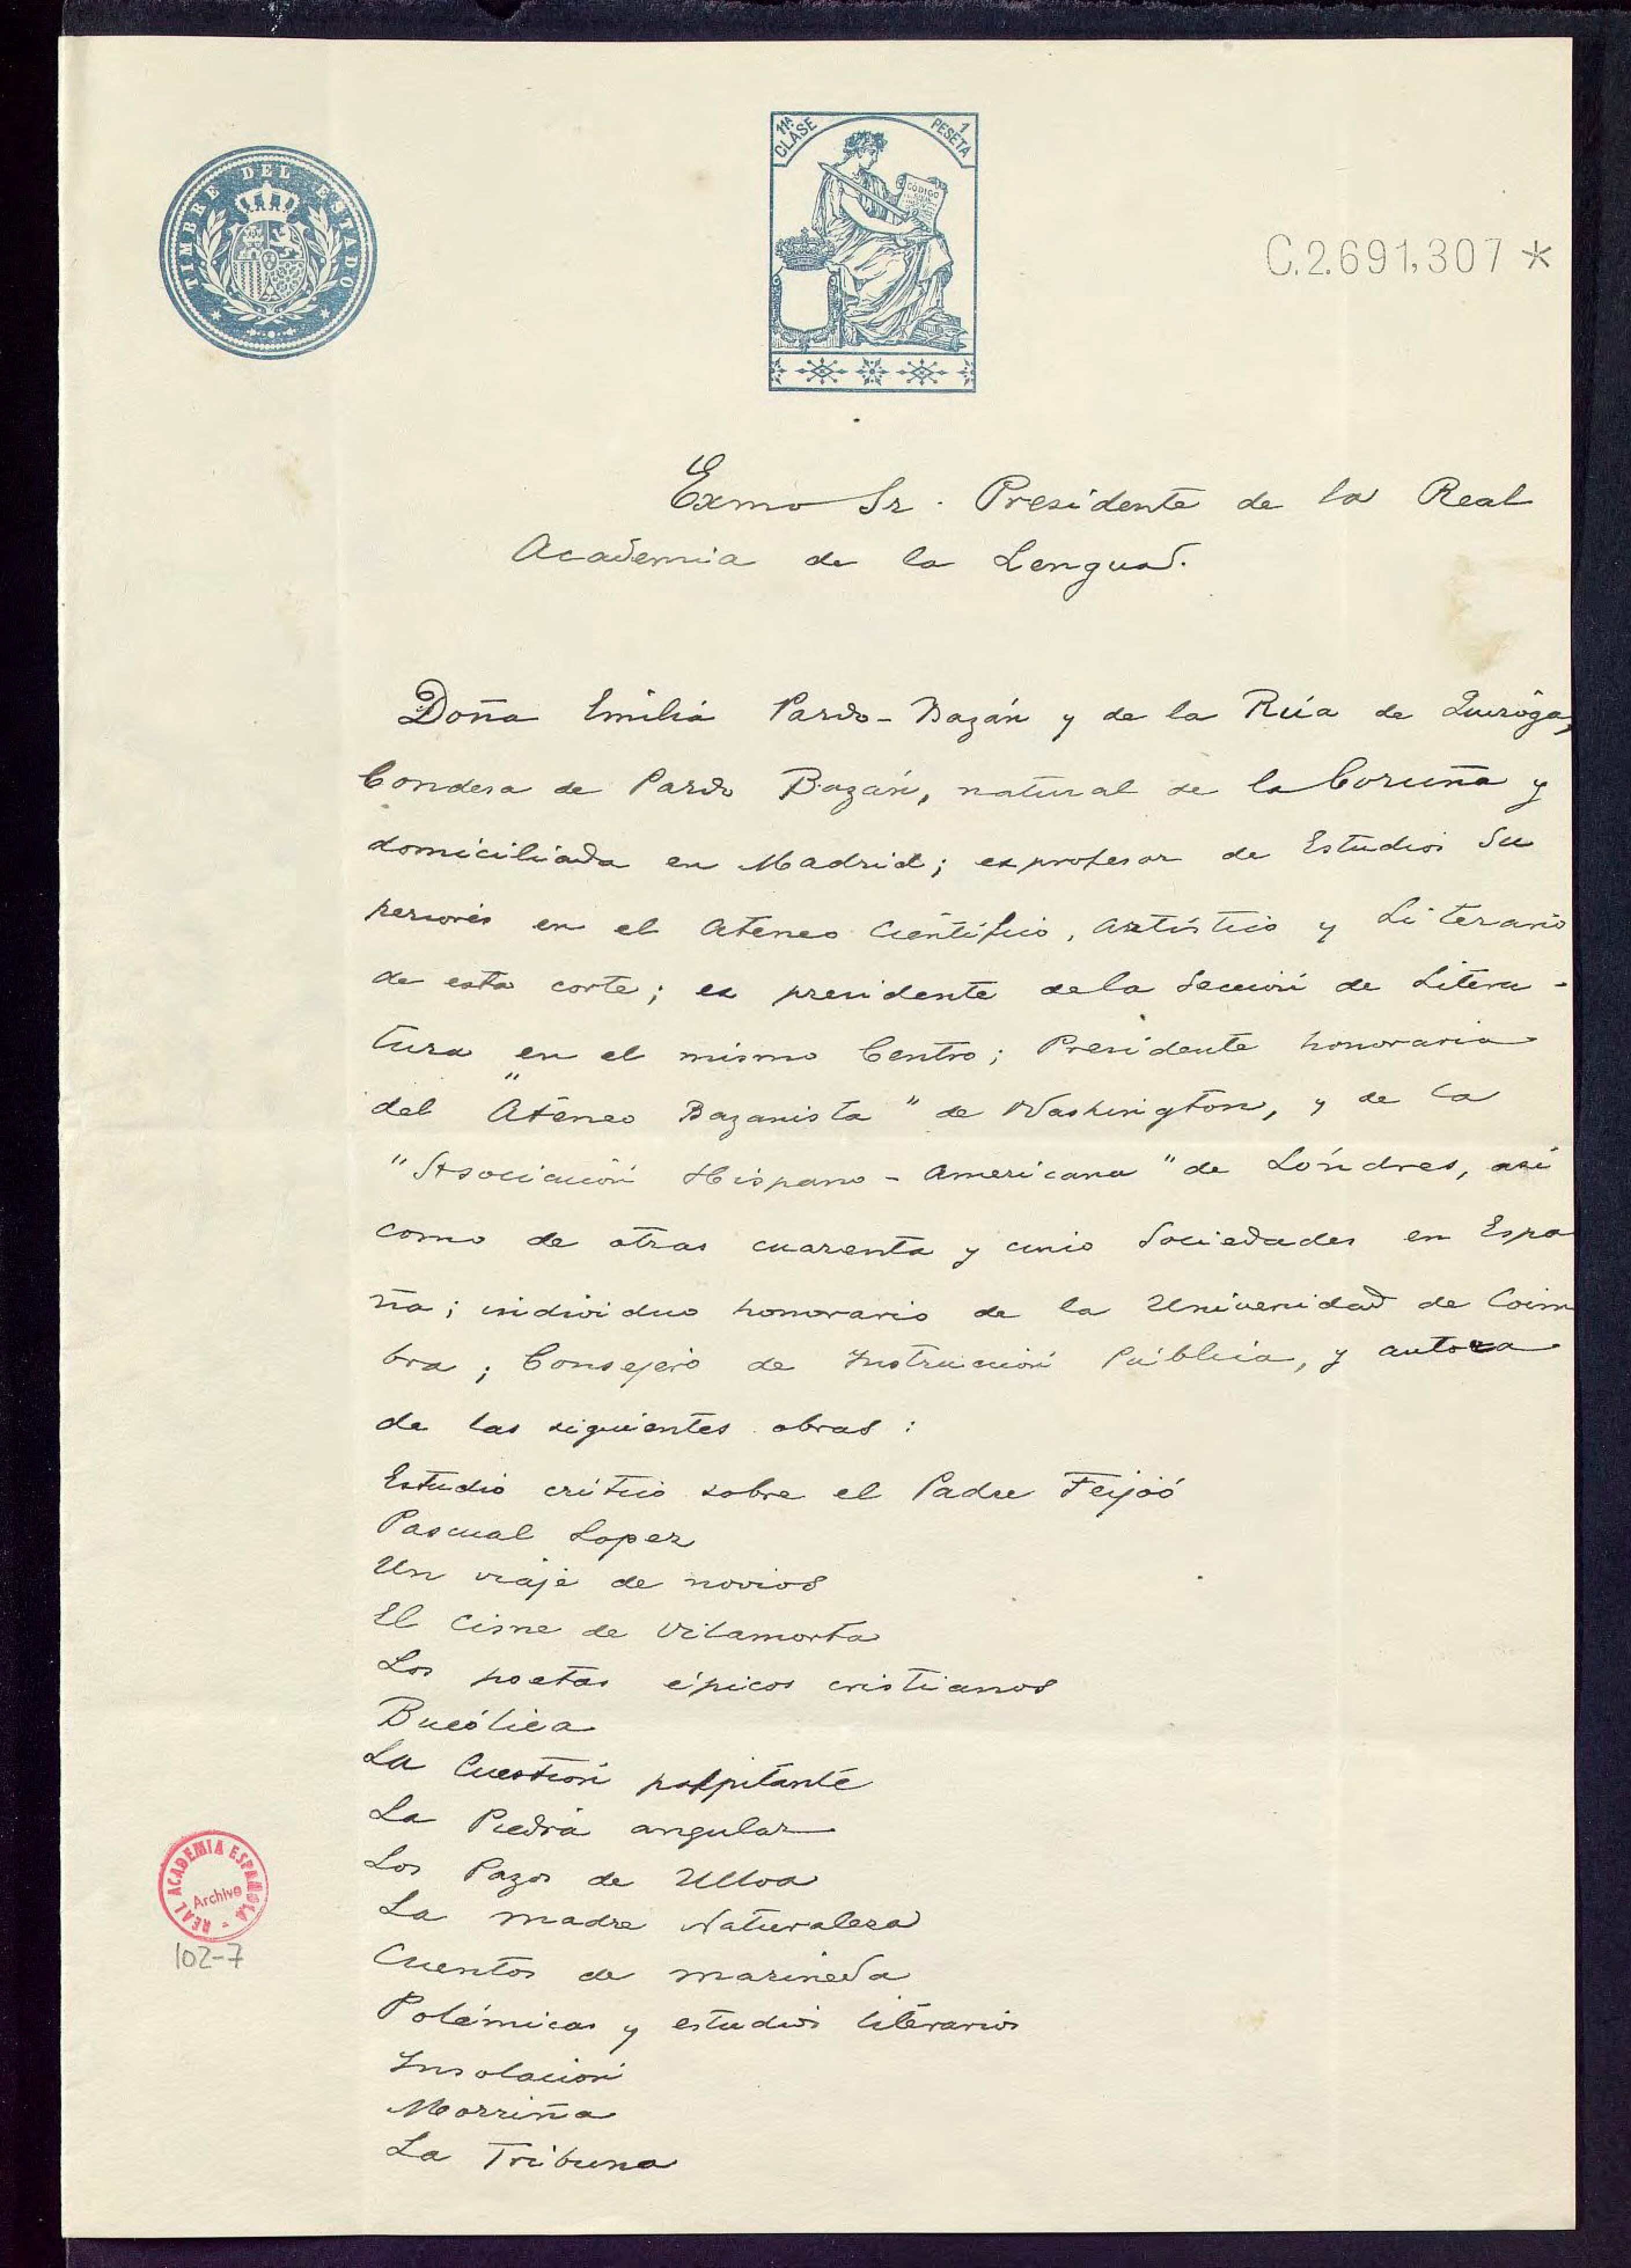 Carta de Emilia Pardo Bazán para pedir su ingreso en la Real Academia Española en 1912.